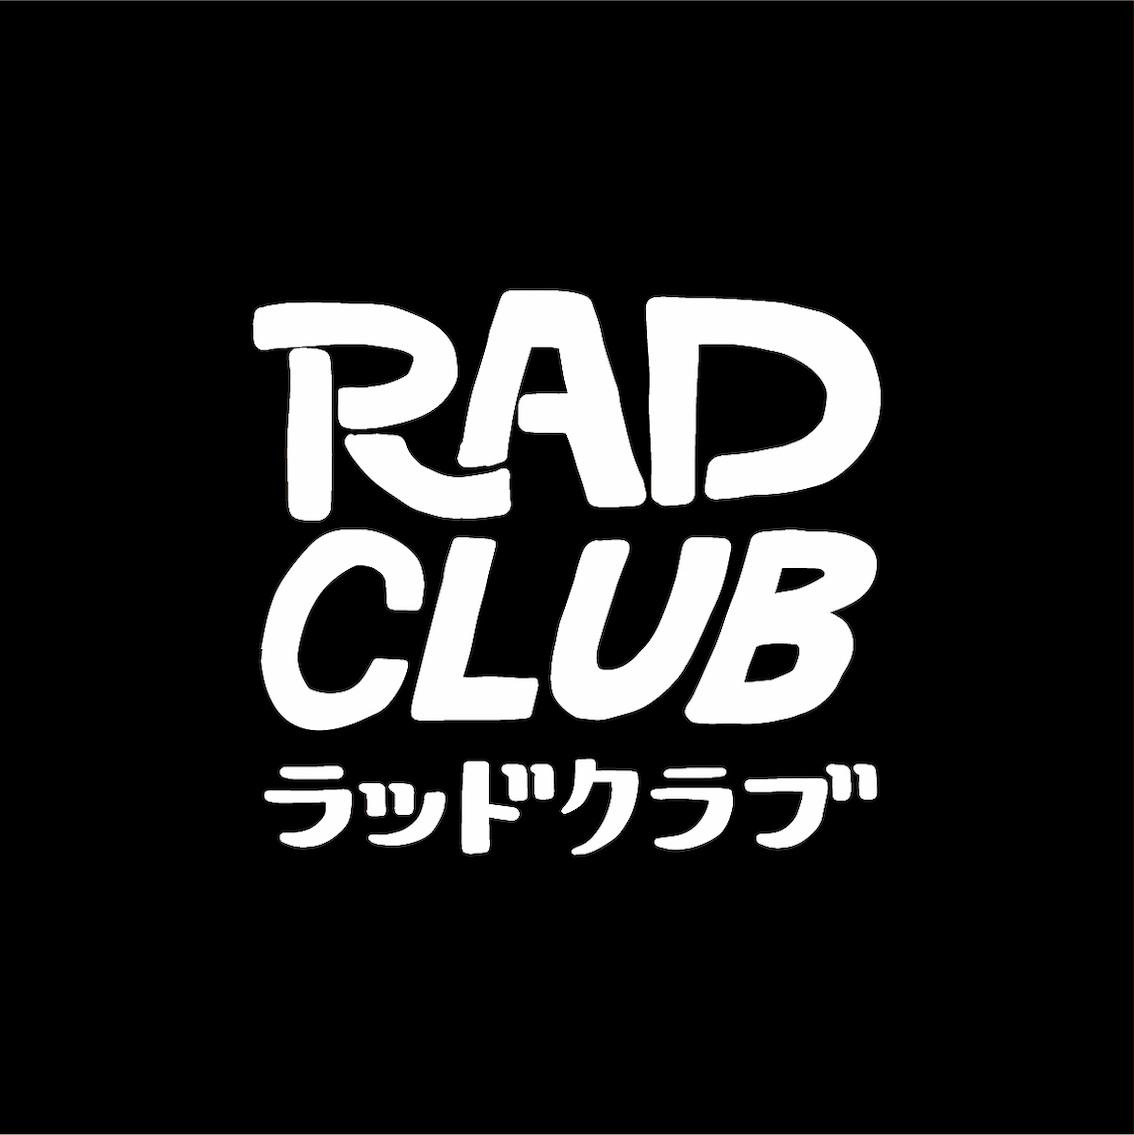 RAD CLUB